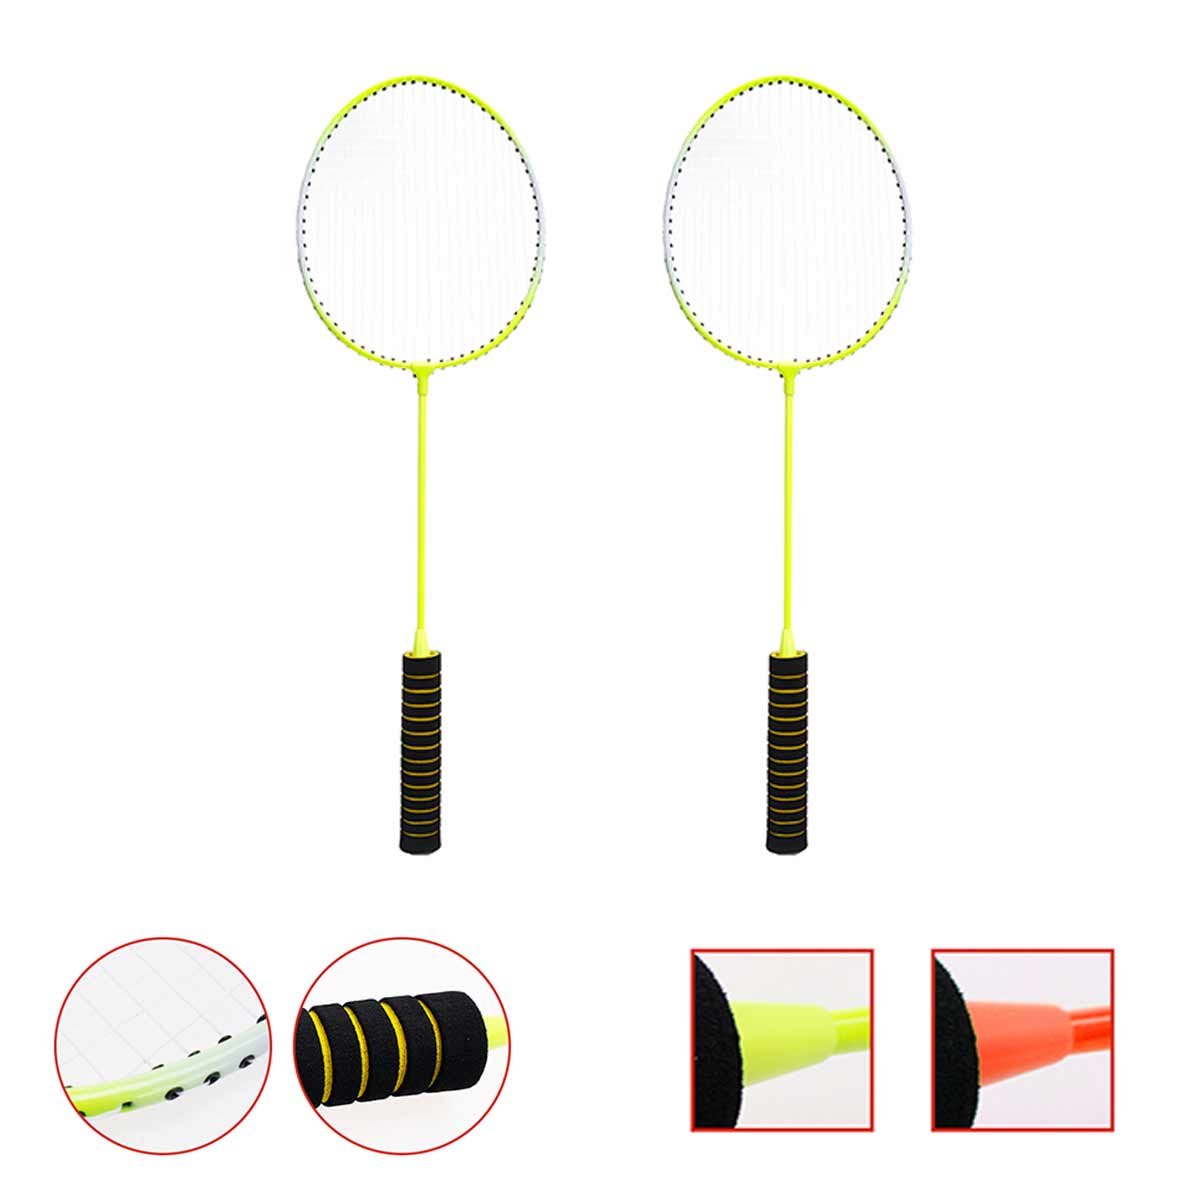 4pcs Racchette Badminton per Principianti per Pratica Forma Classica con Custodia Colore Assortito Impugnatura Gommata